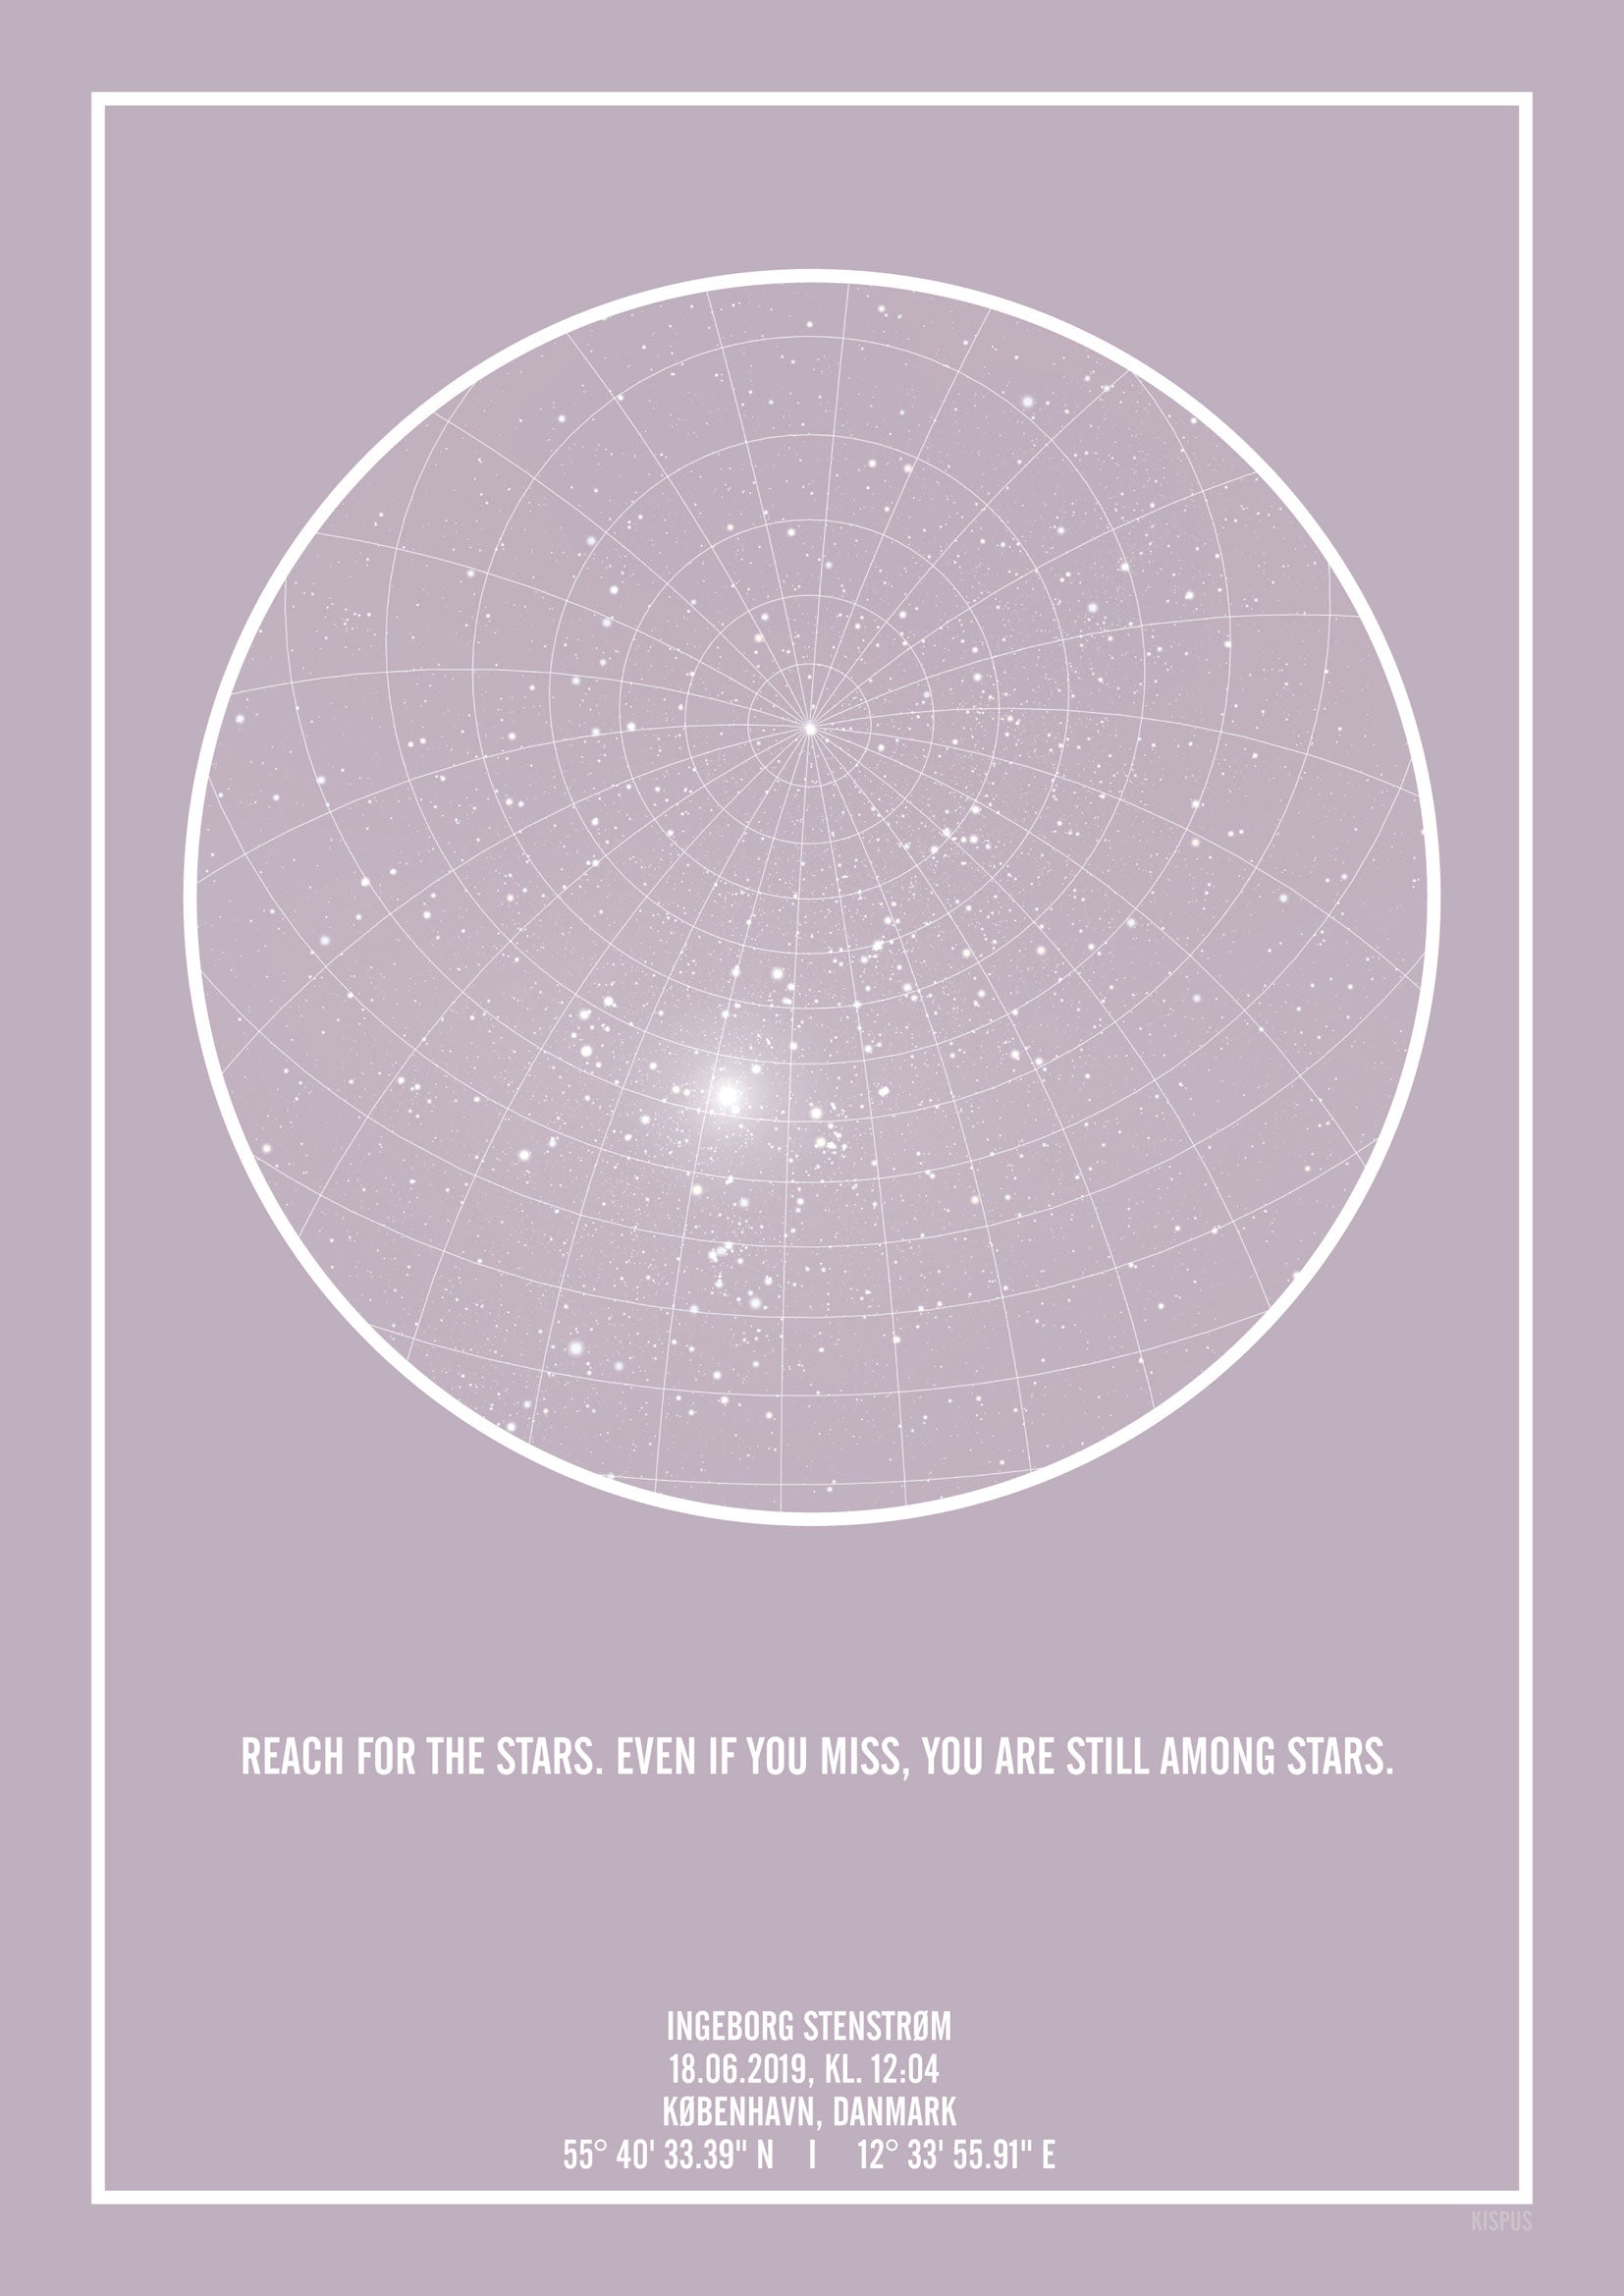 Reach for the stars. Even if you miss, you are still among stars citat på stjernehimmel plakat